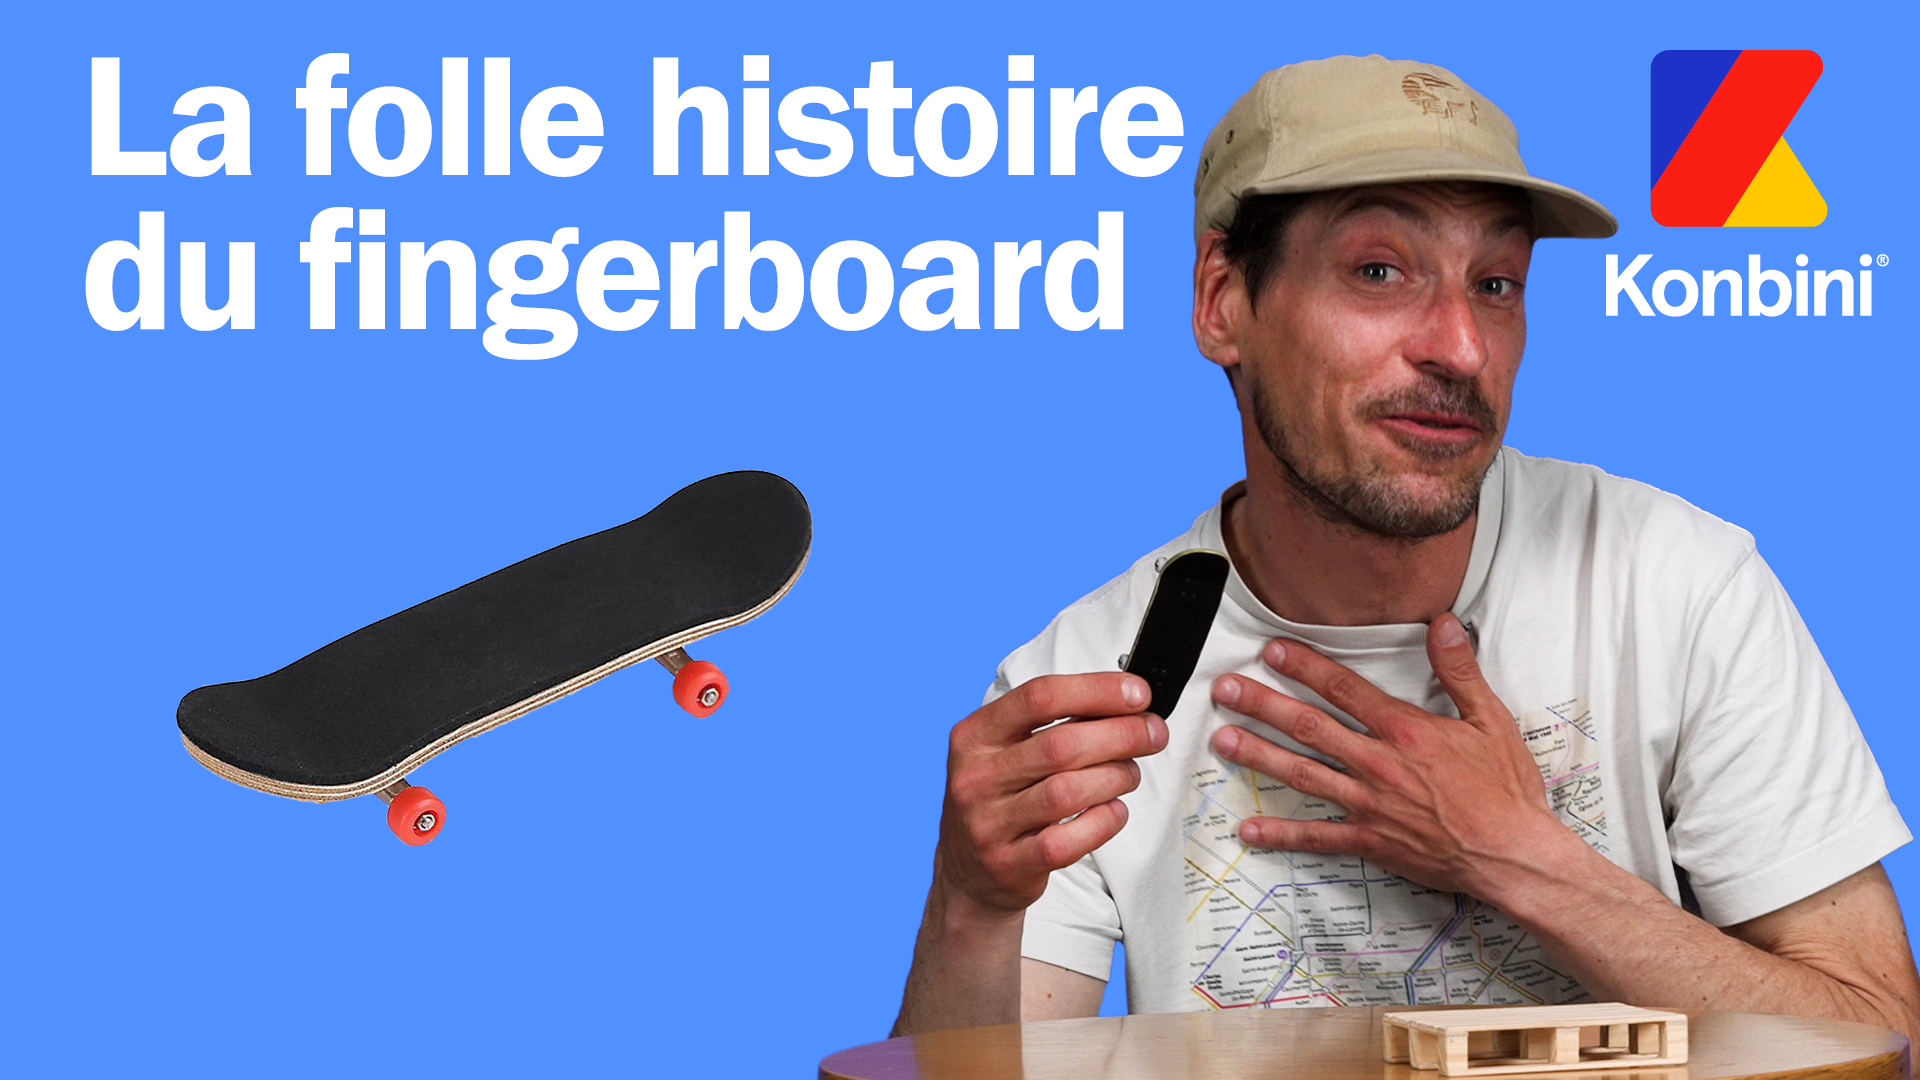 La folle histoire du fingerboard (skateboard pour les doigts)